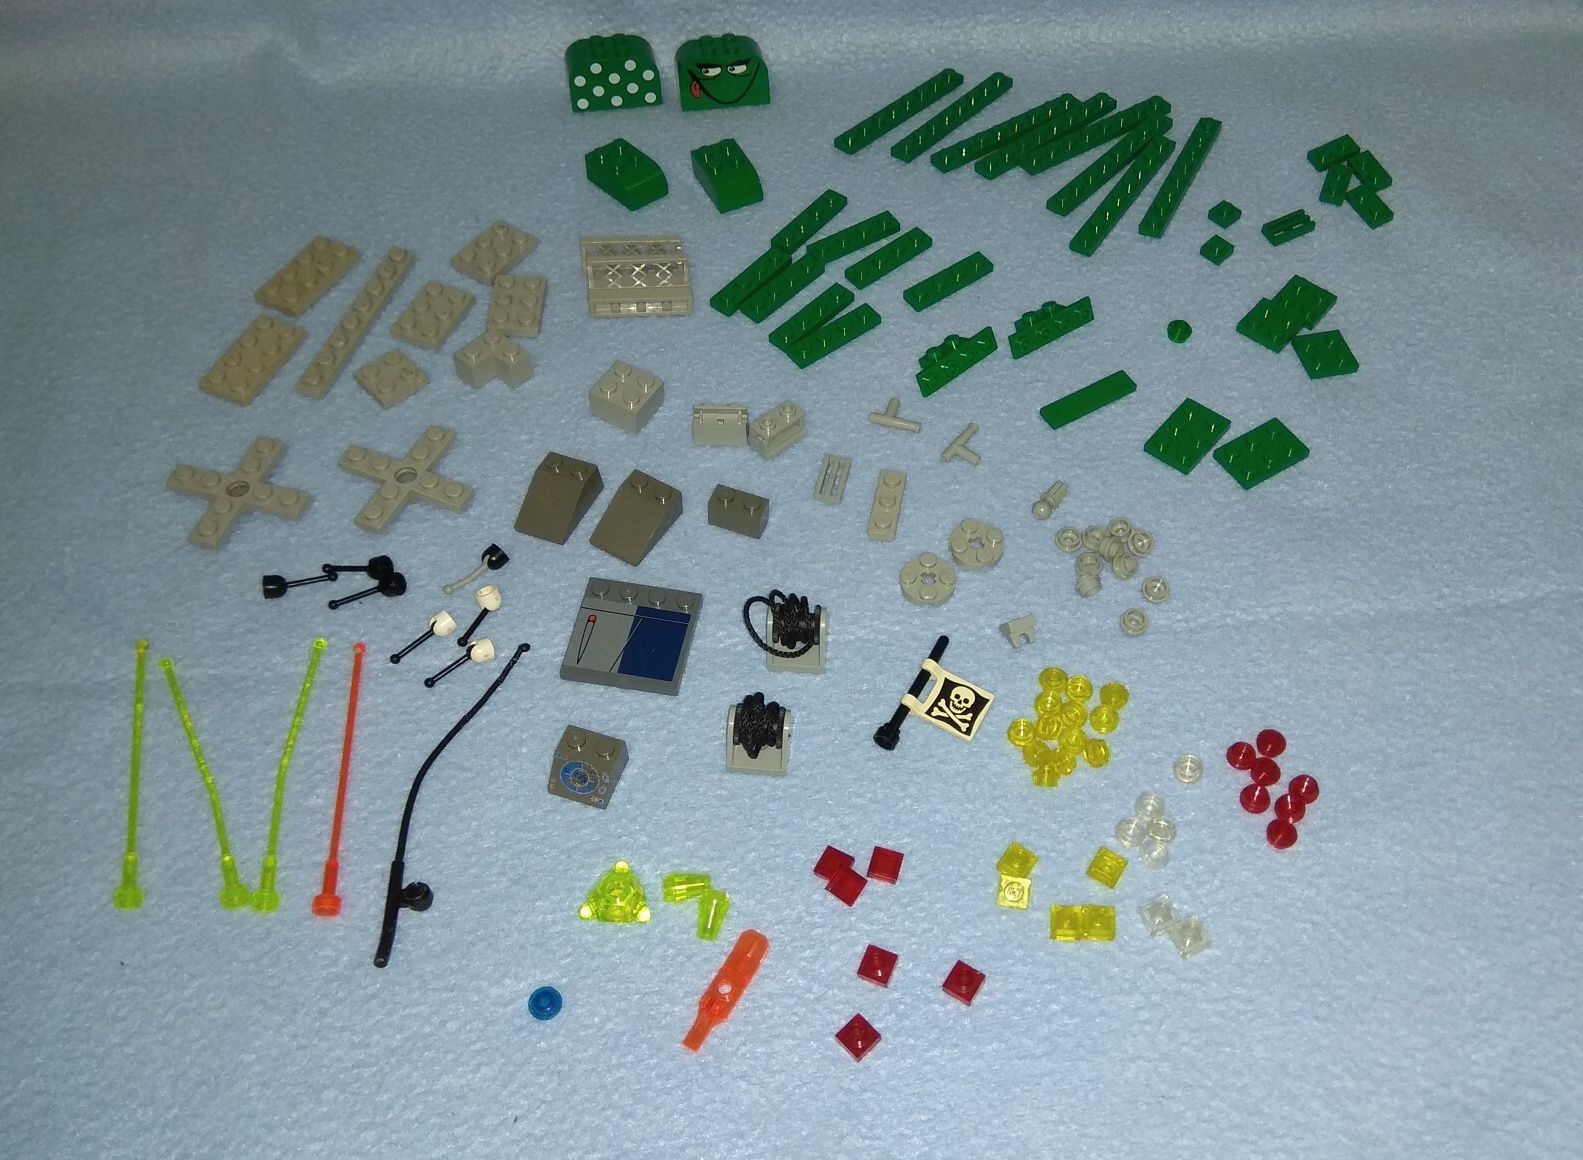 Klocki Lego zielony,  szary, lego światełka, lego różne